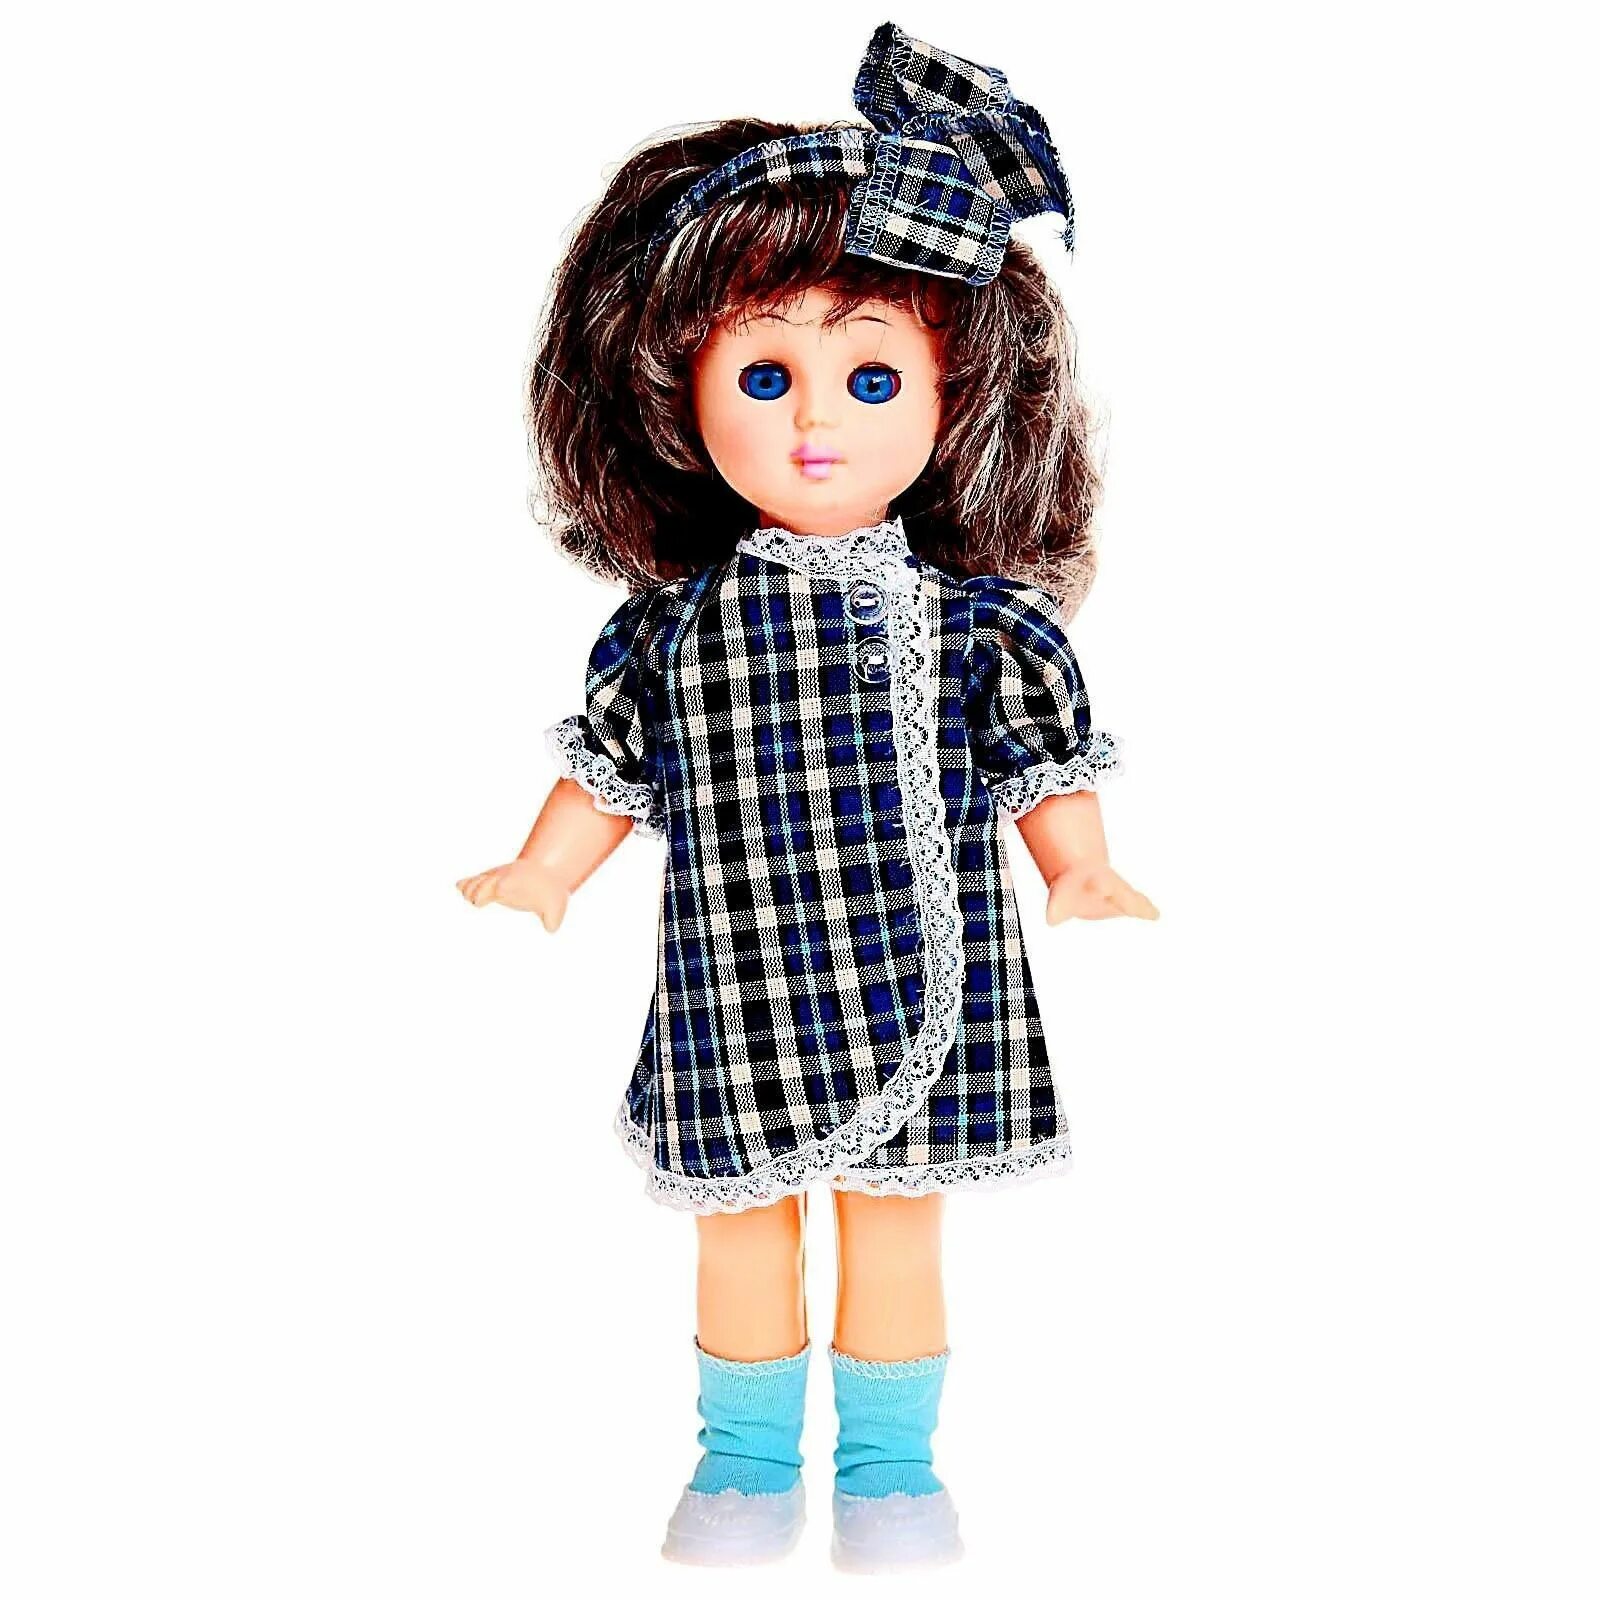 Куклы юли. Кукла «Юля» микс. Мир кукол кукла «Юля» микс. Кукла Юлька 2. Ар35-27 кукла Юля 35см (пакет ).